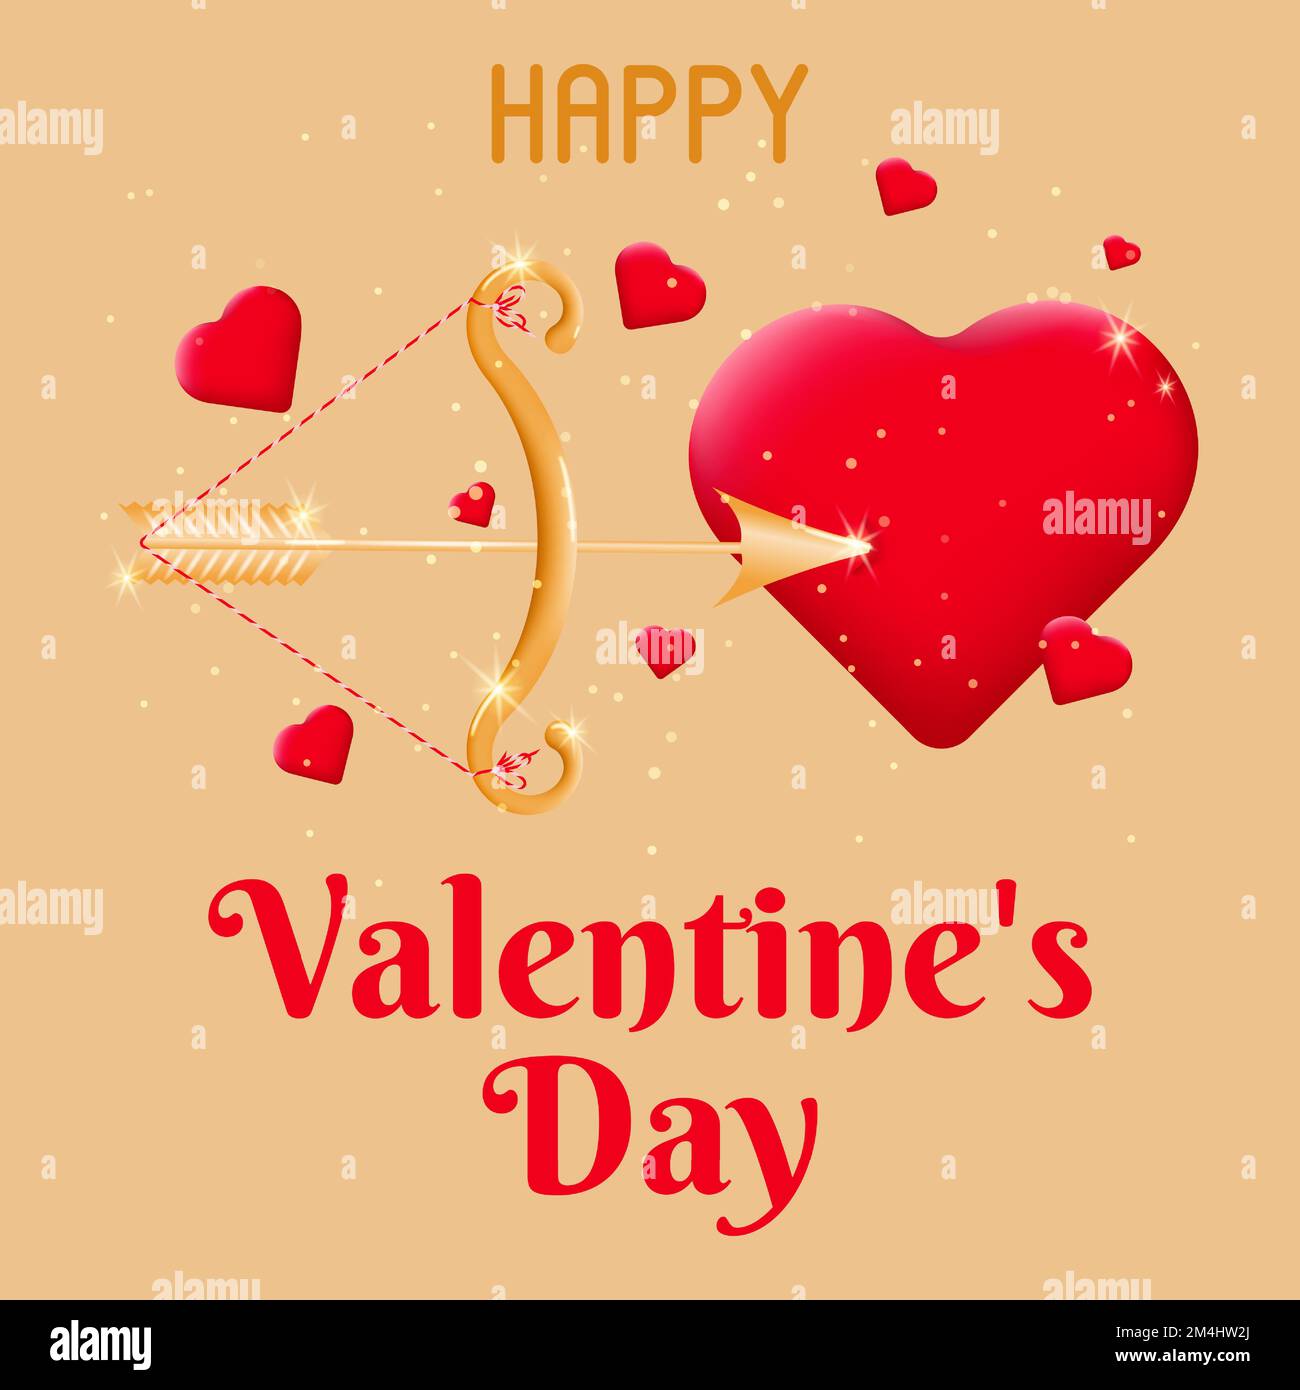 Tarjeta de San Valentín con un arco y flecha de Cupido disparando un corazón rojo. Postal para el 14th de febrero. El concepto de celebrar el Día de San Valentín y el amor Ilustración del Vector